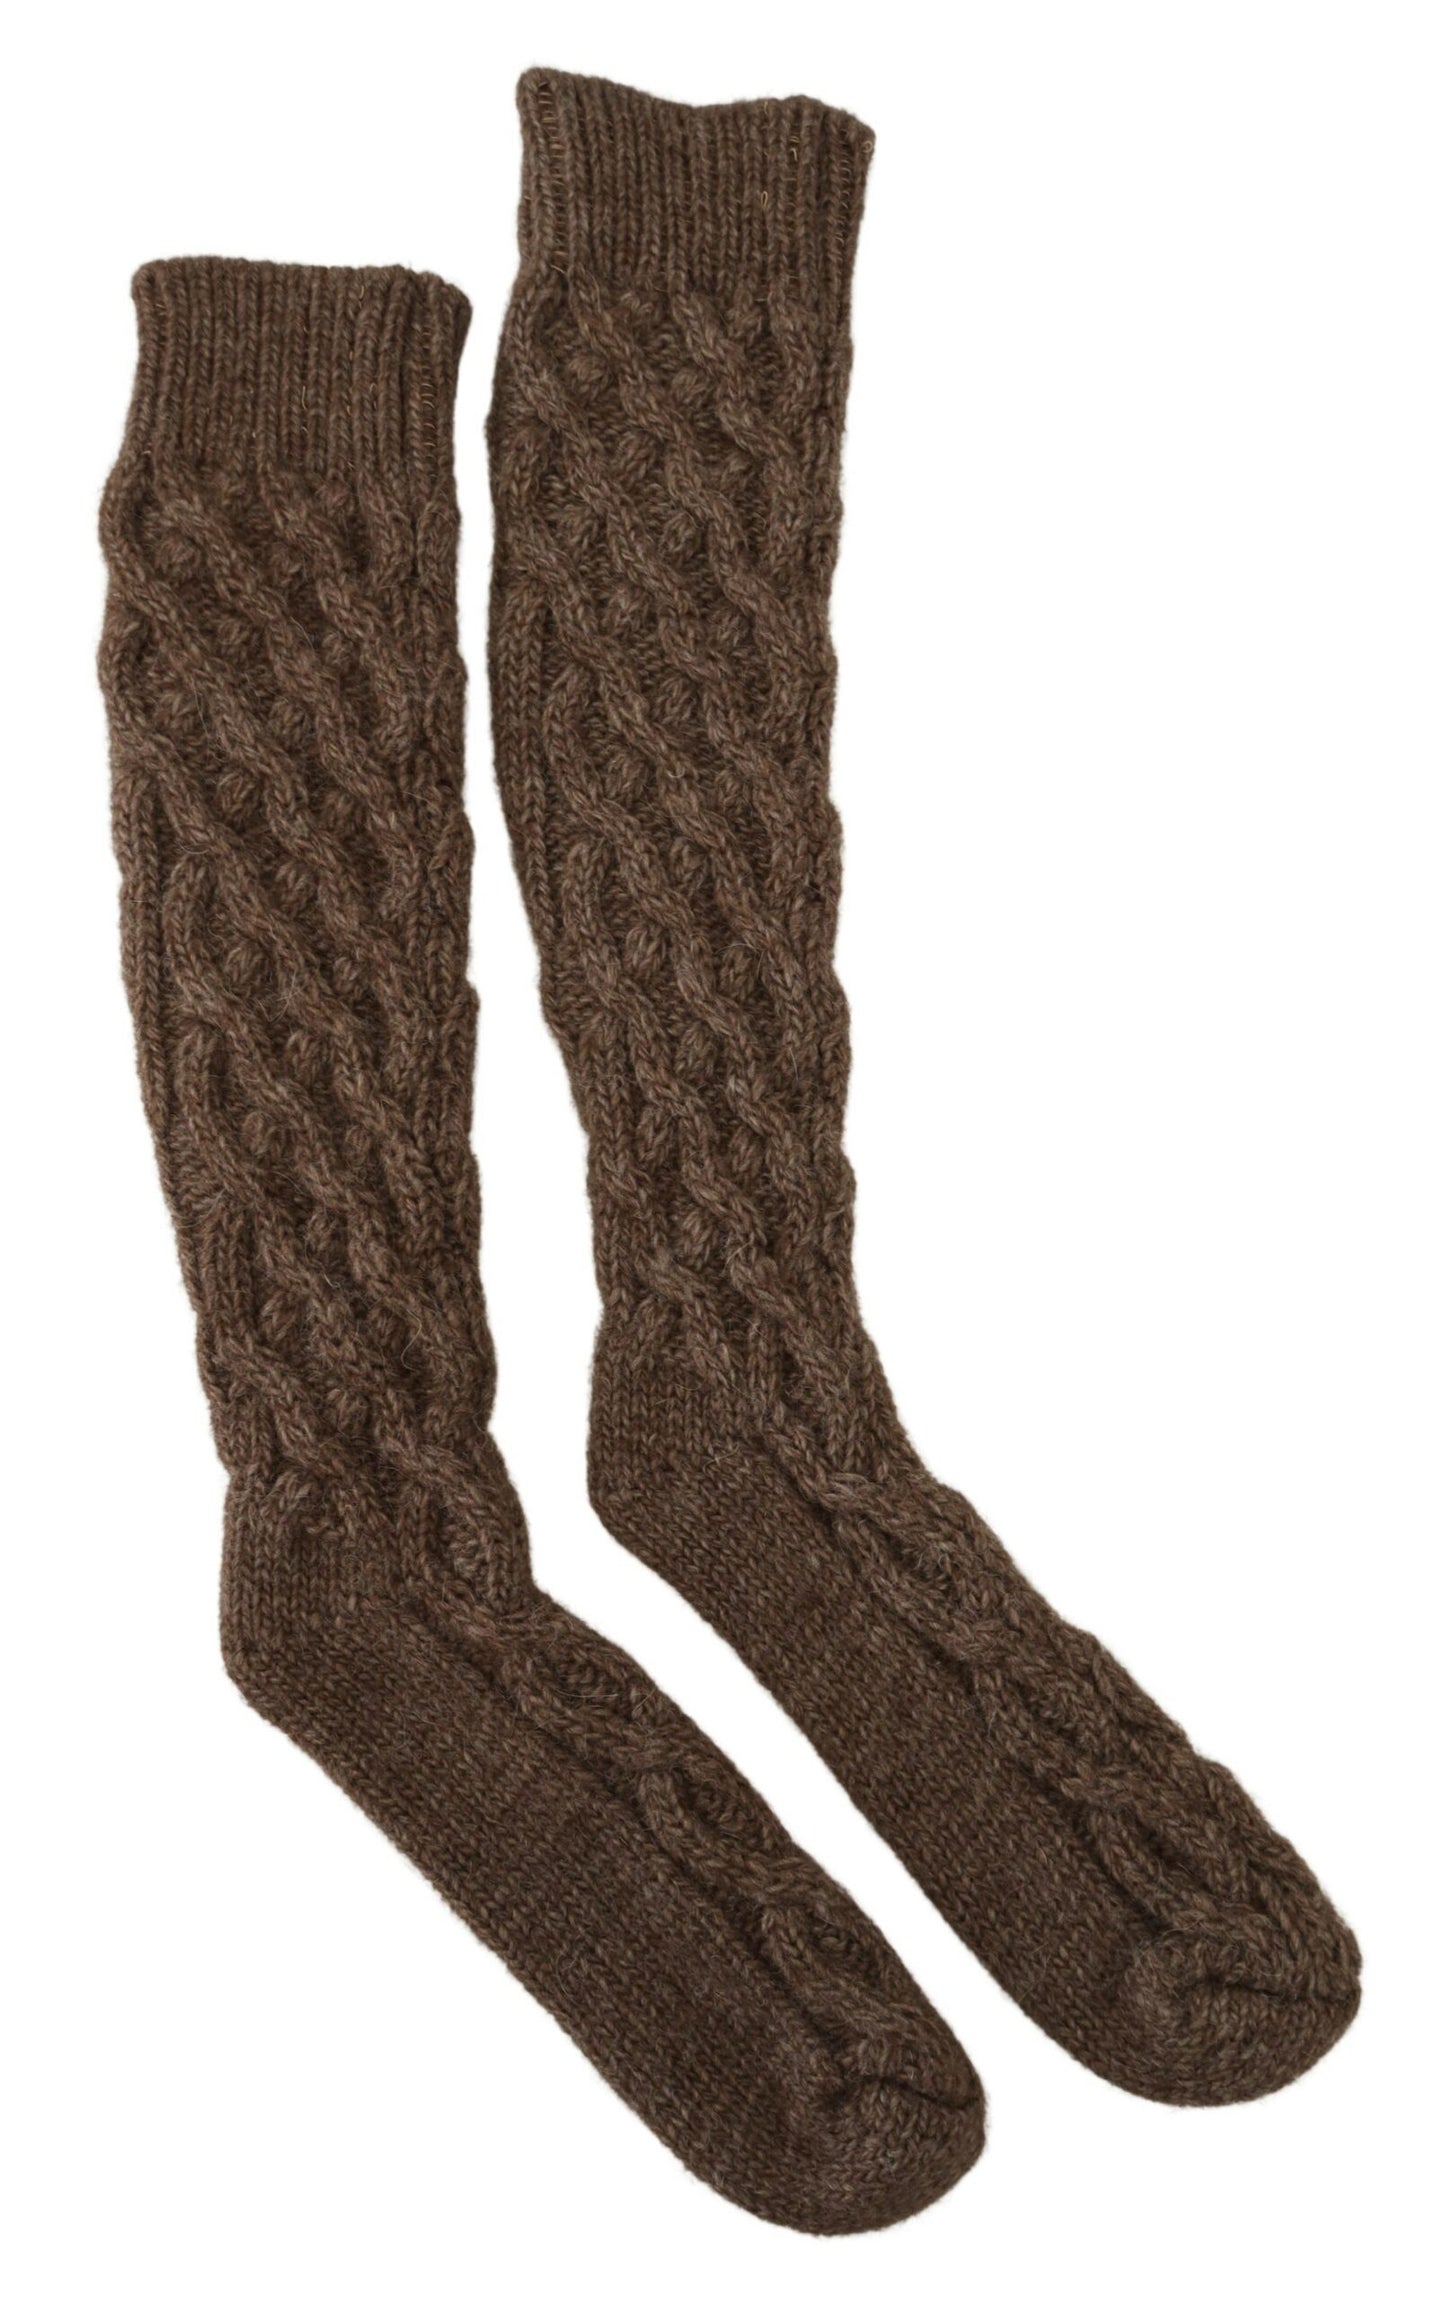 Elegant Knit Over-the-Calf Women's Socks